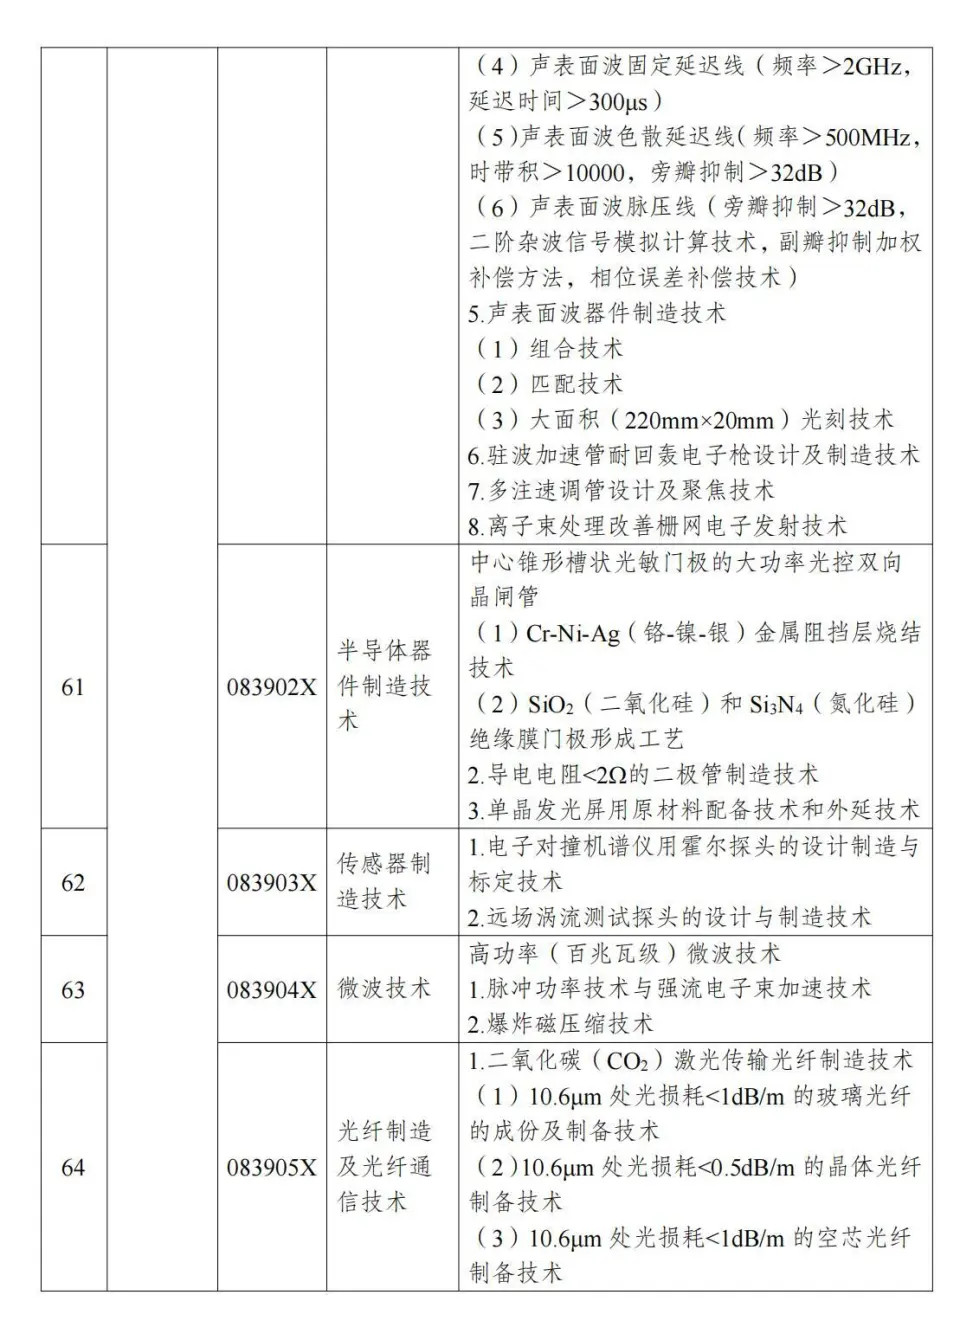 两部分公布《中国制止出口限制出口技术目录》 第17张图片